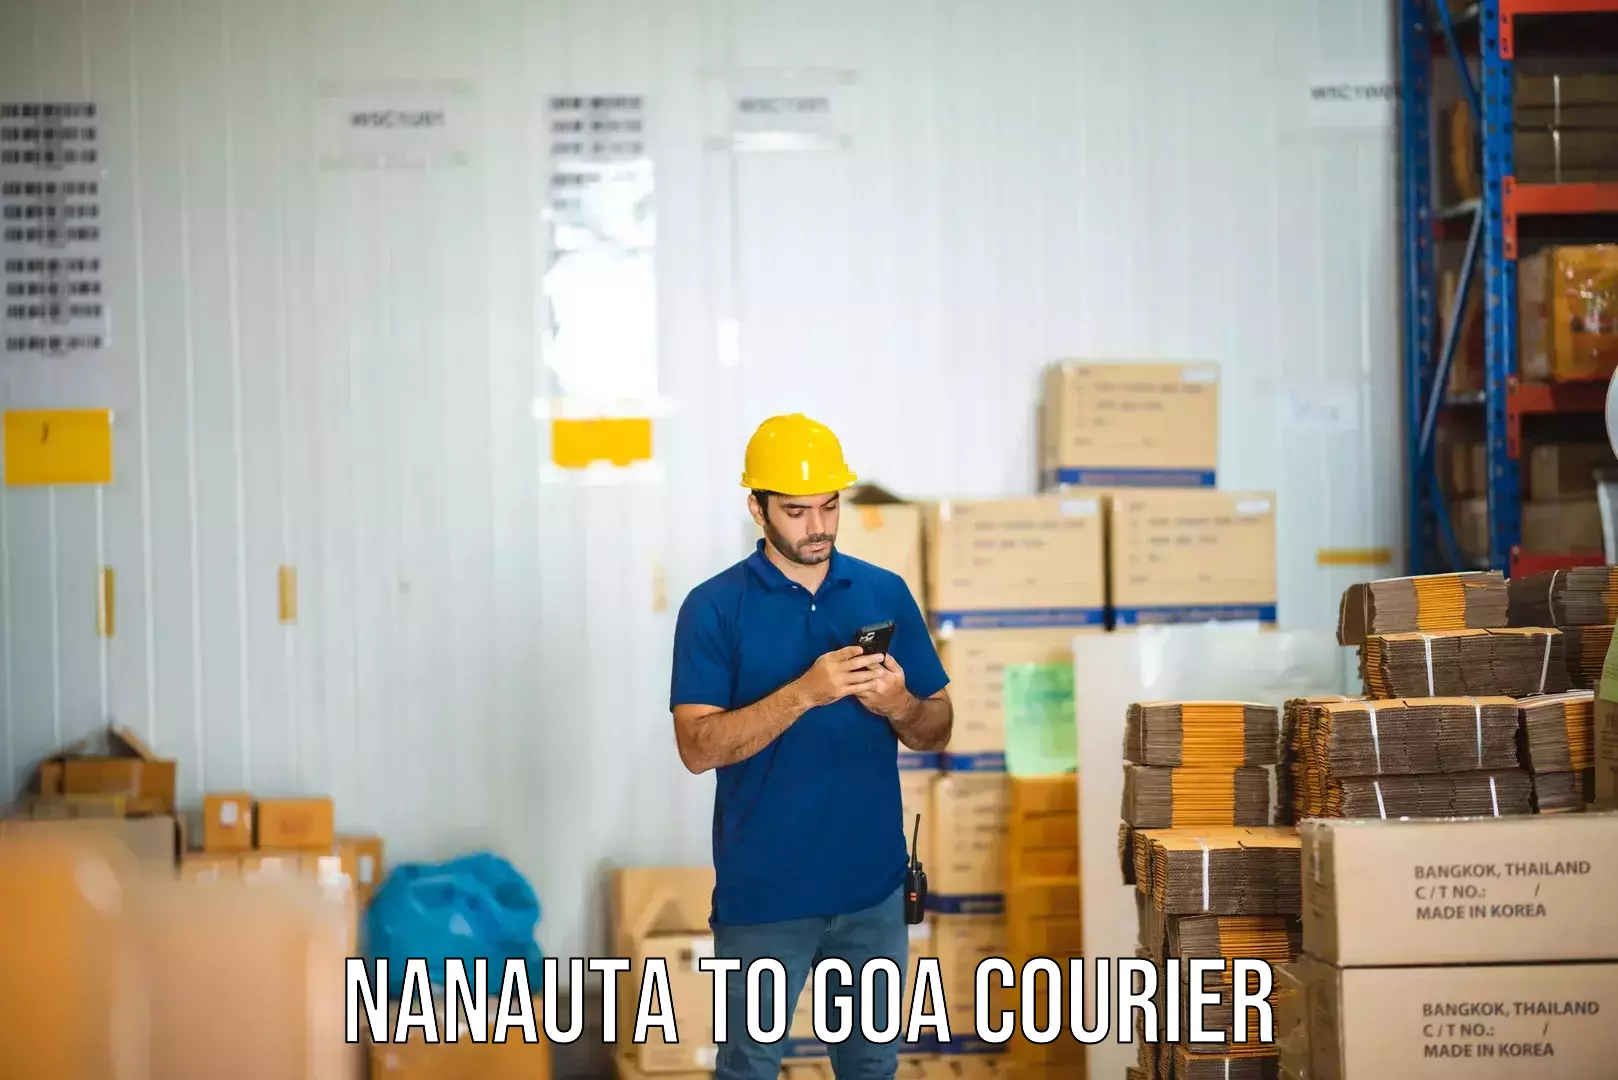 Courier service comparison in Nanauta to Goa